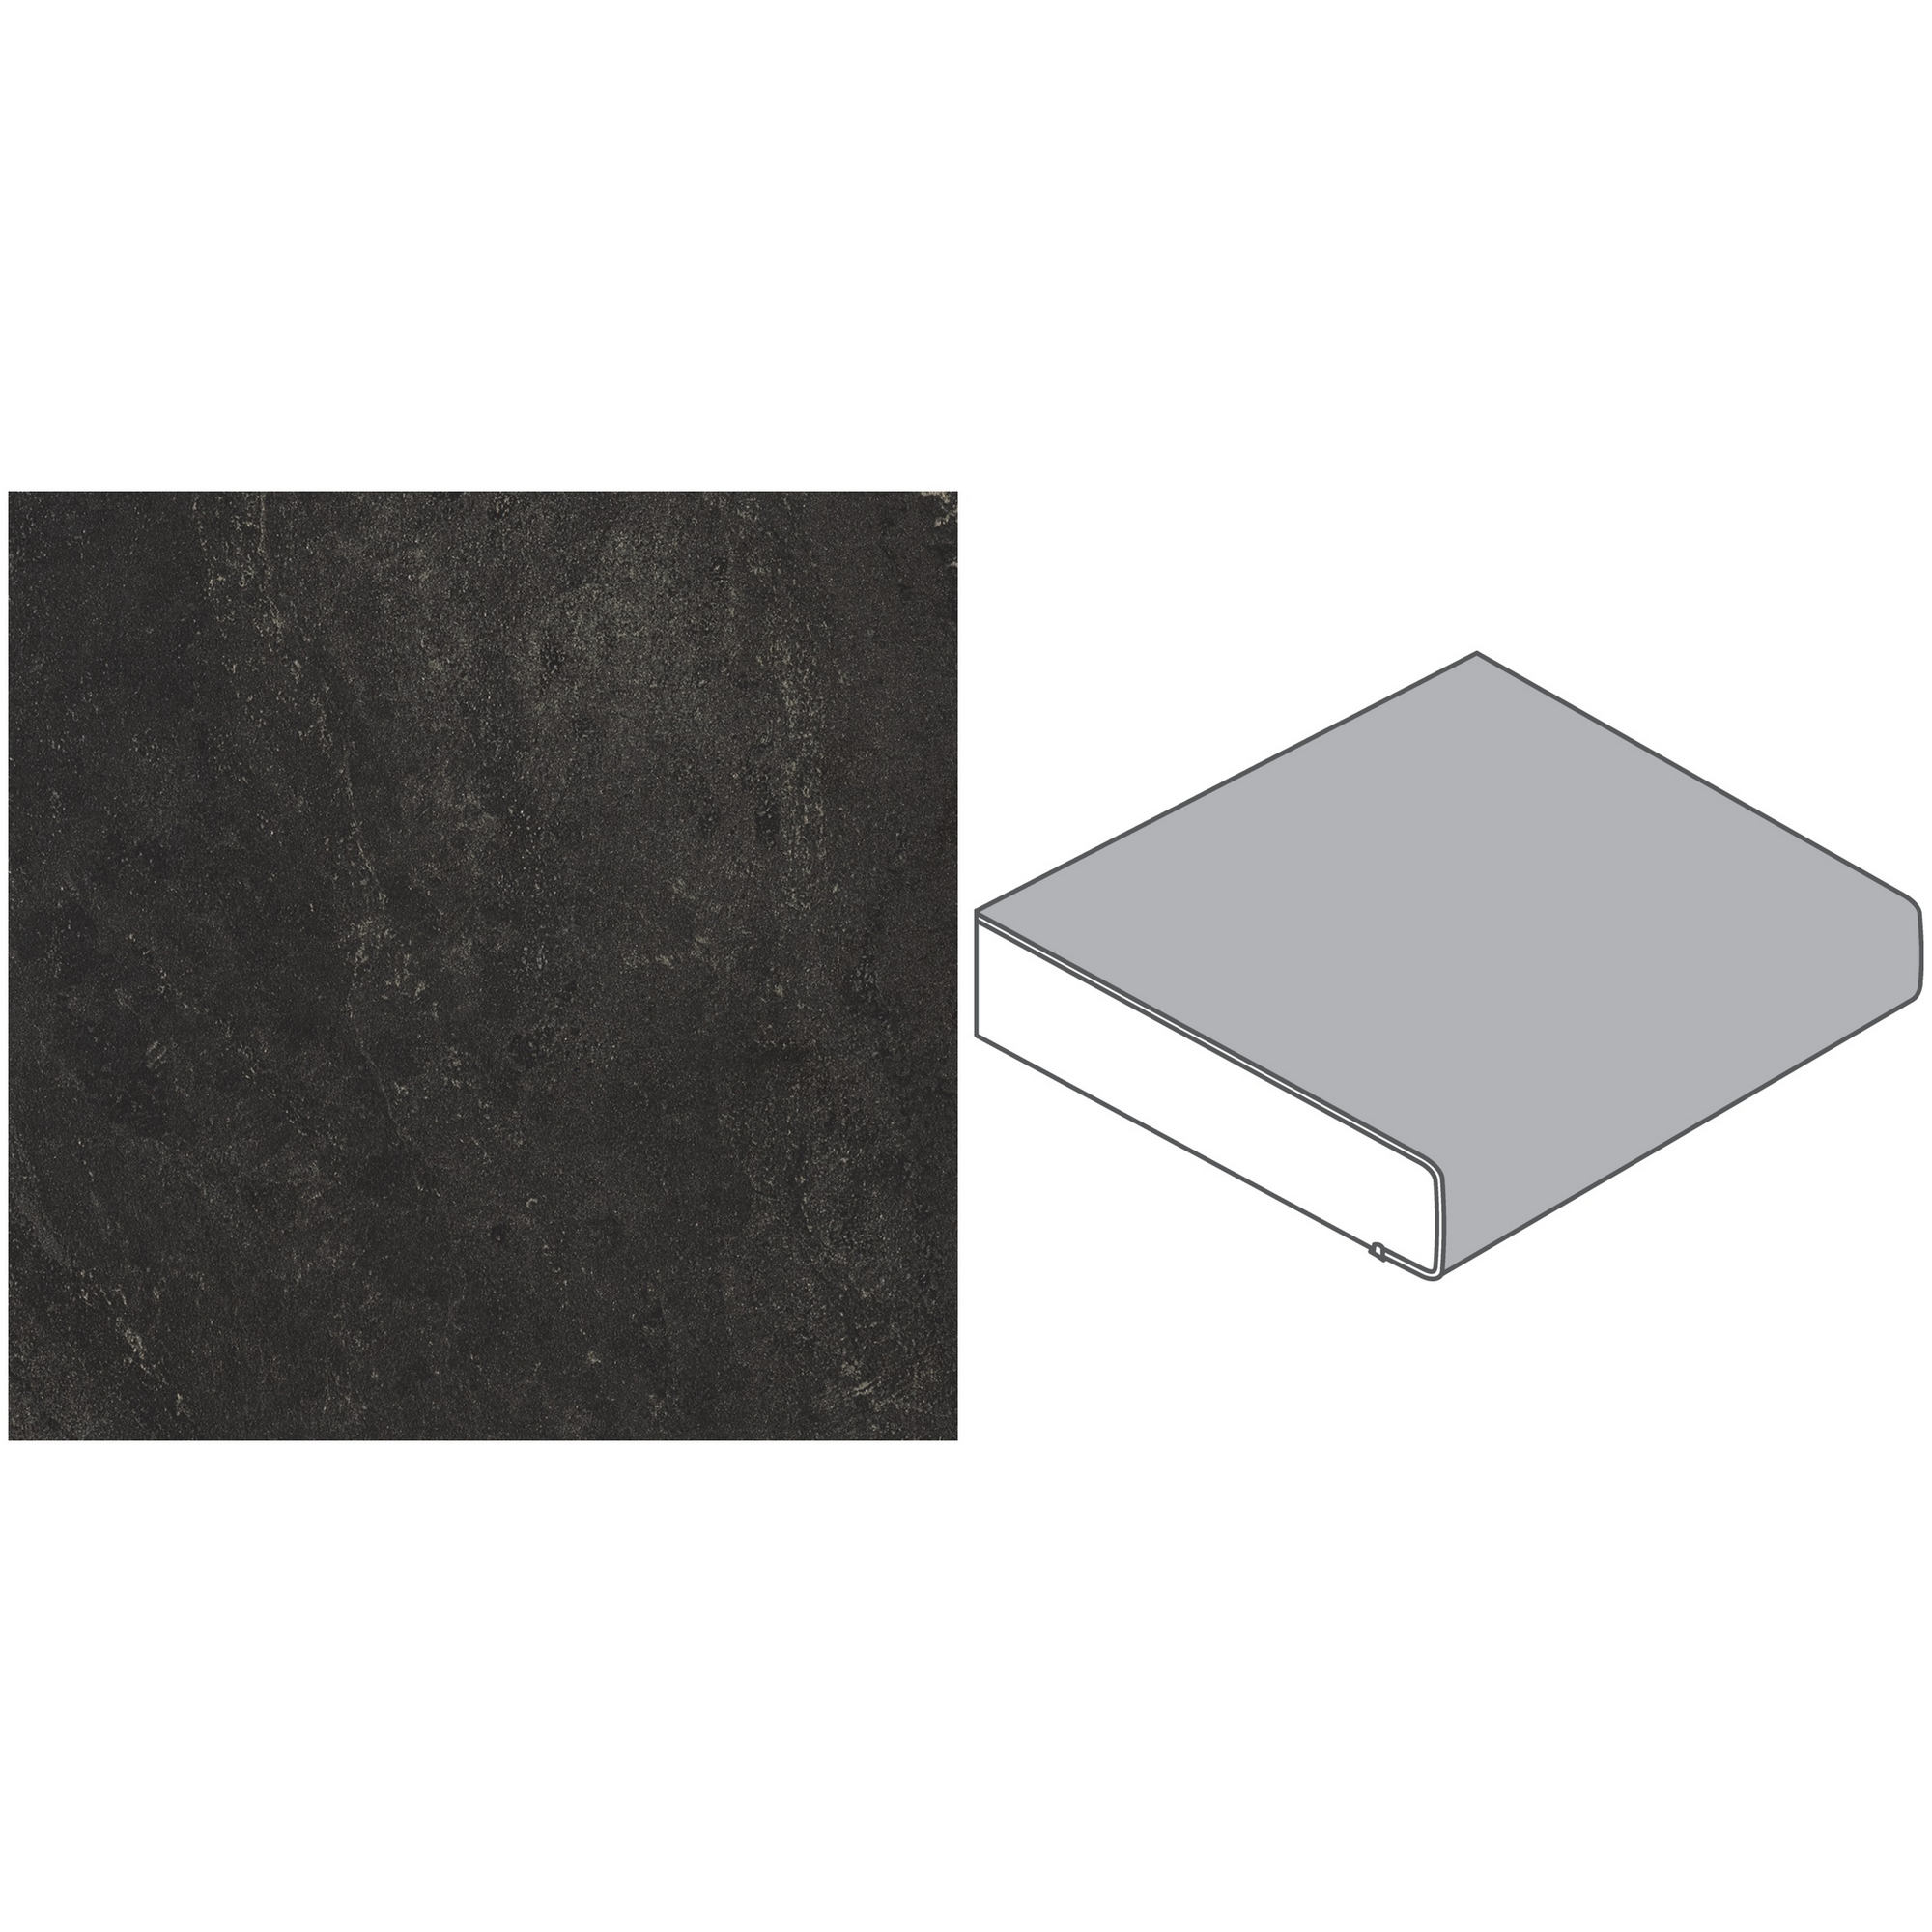 Küchenarbeitsplatte 'BZ173 SI' 2960 x 600 x 39 mm bronzit schwarz + product picture